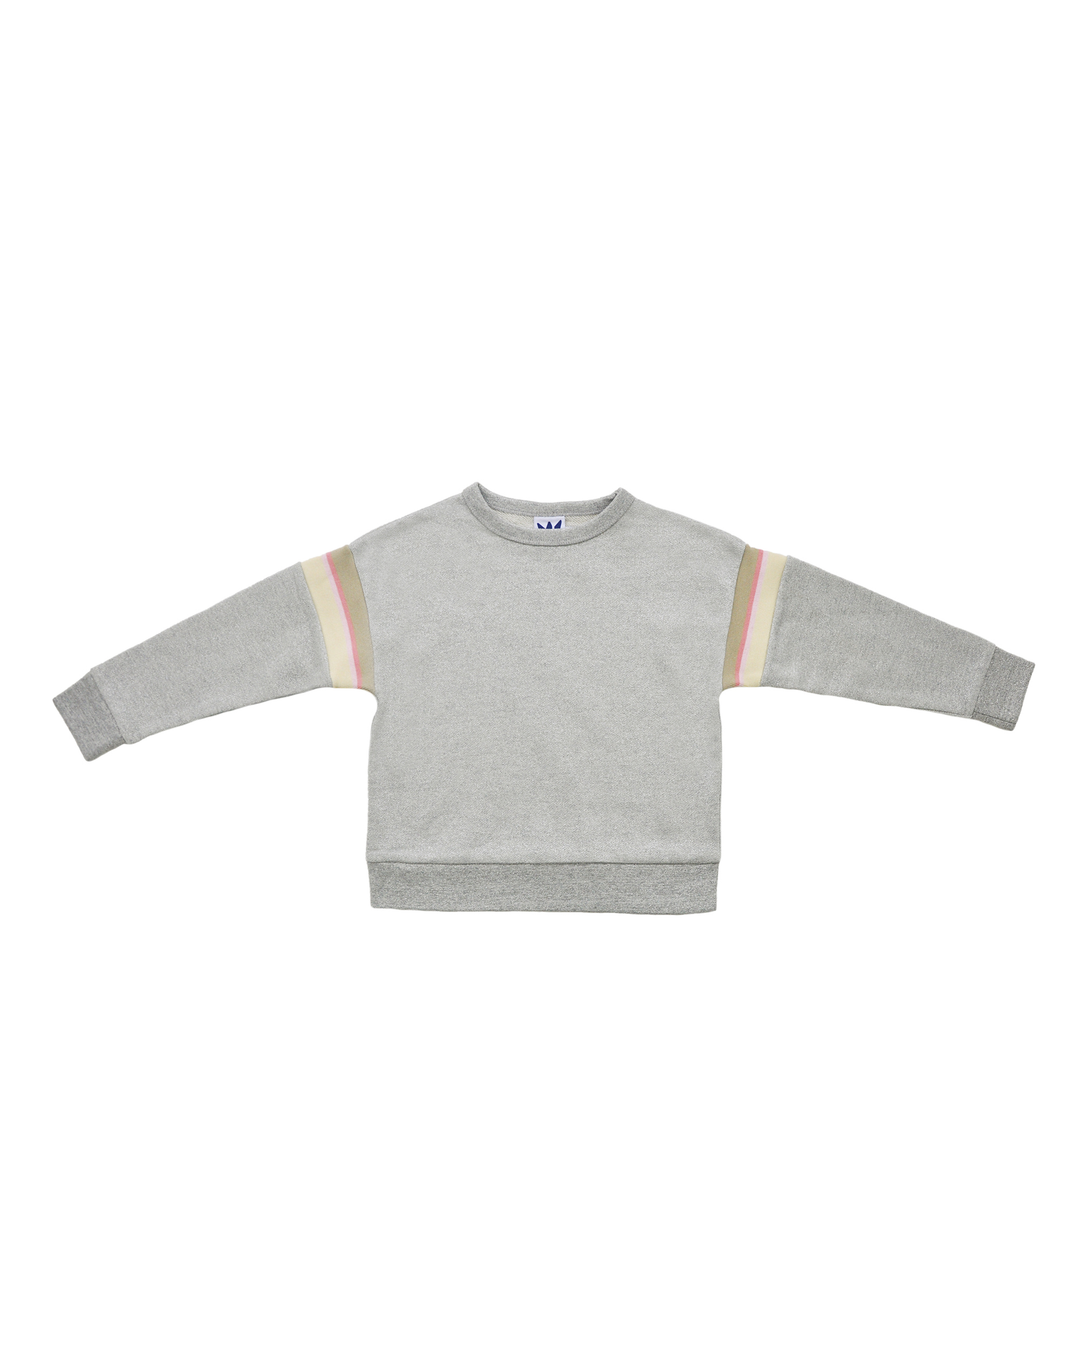 Sweatshirt gris metalizado con ligas multicolor en brazos